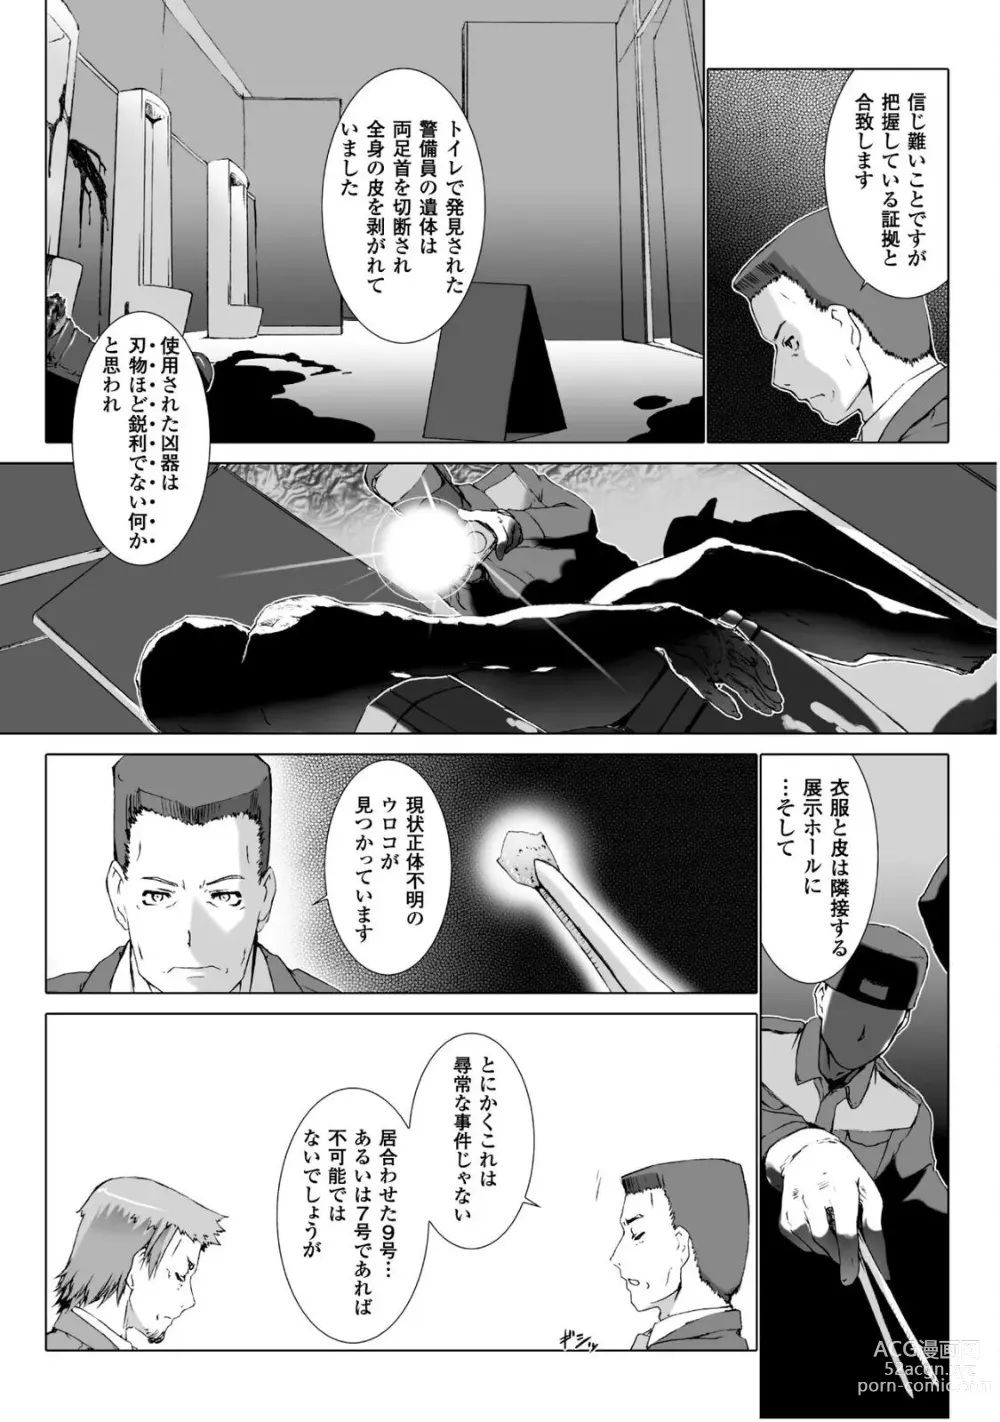 Page 21 of manga Ziggurat 5